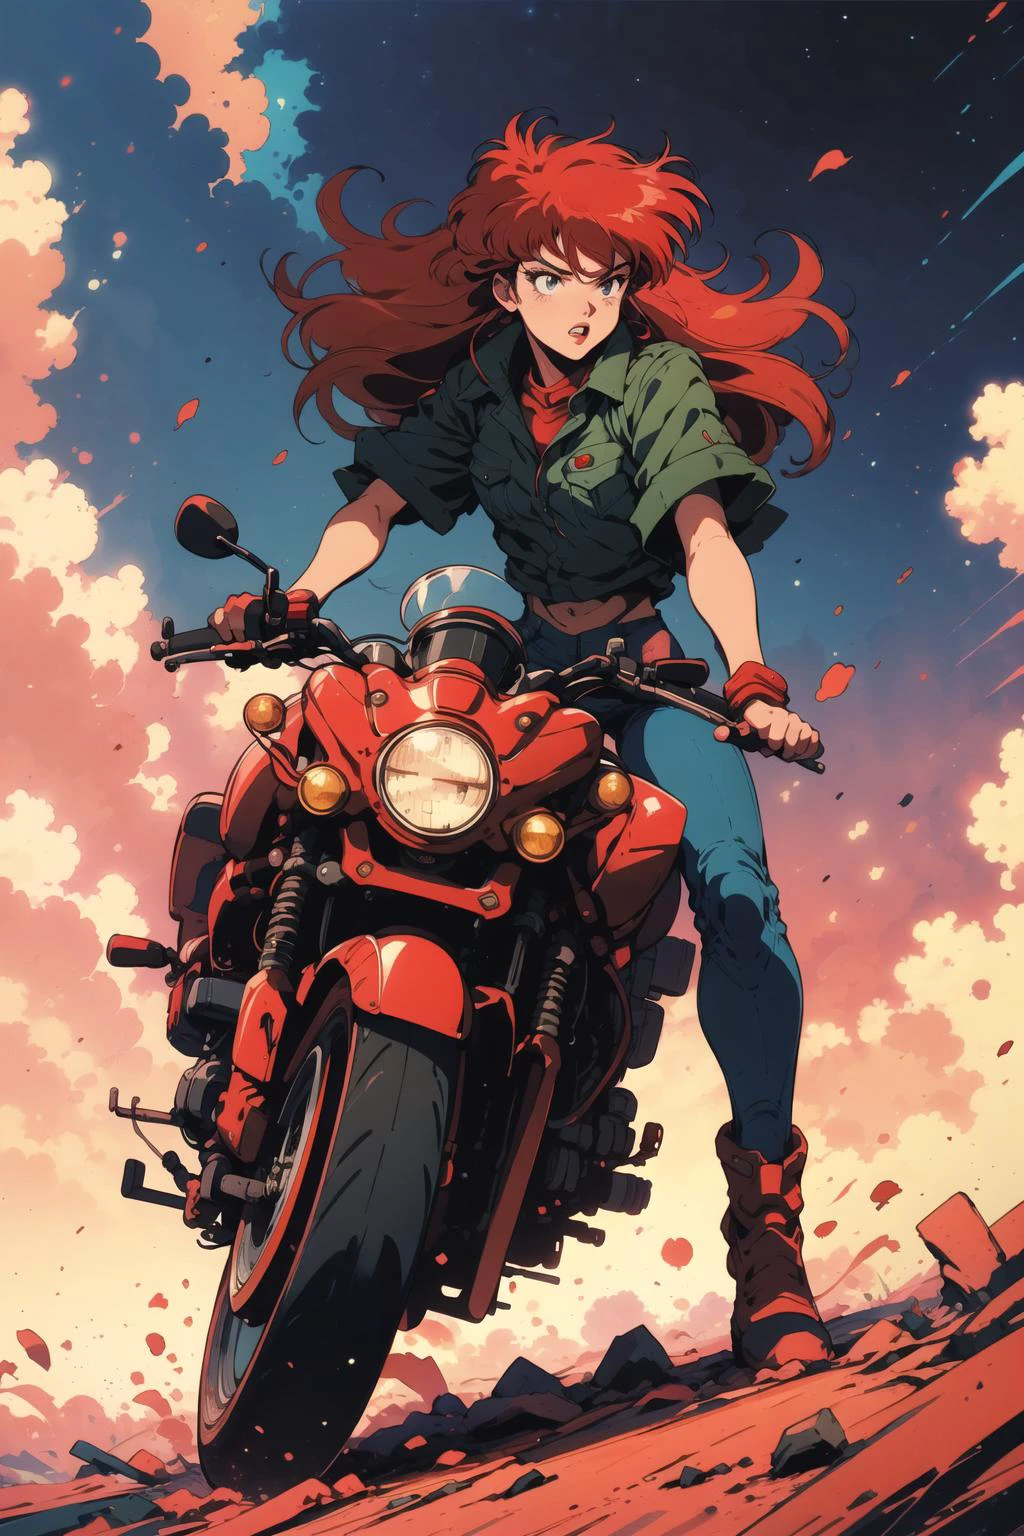 Poster von Souryuu Asuka Langley auf einem Motorrad, Rote Haare, Konzeptkunst,  Retro-Anime, dynamische pose, Comic, Fantasie,